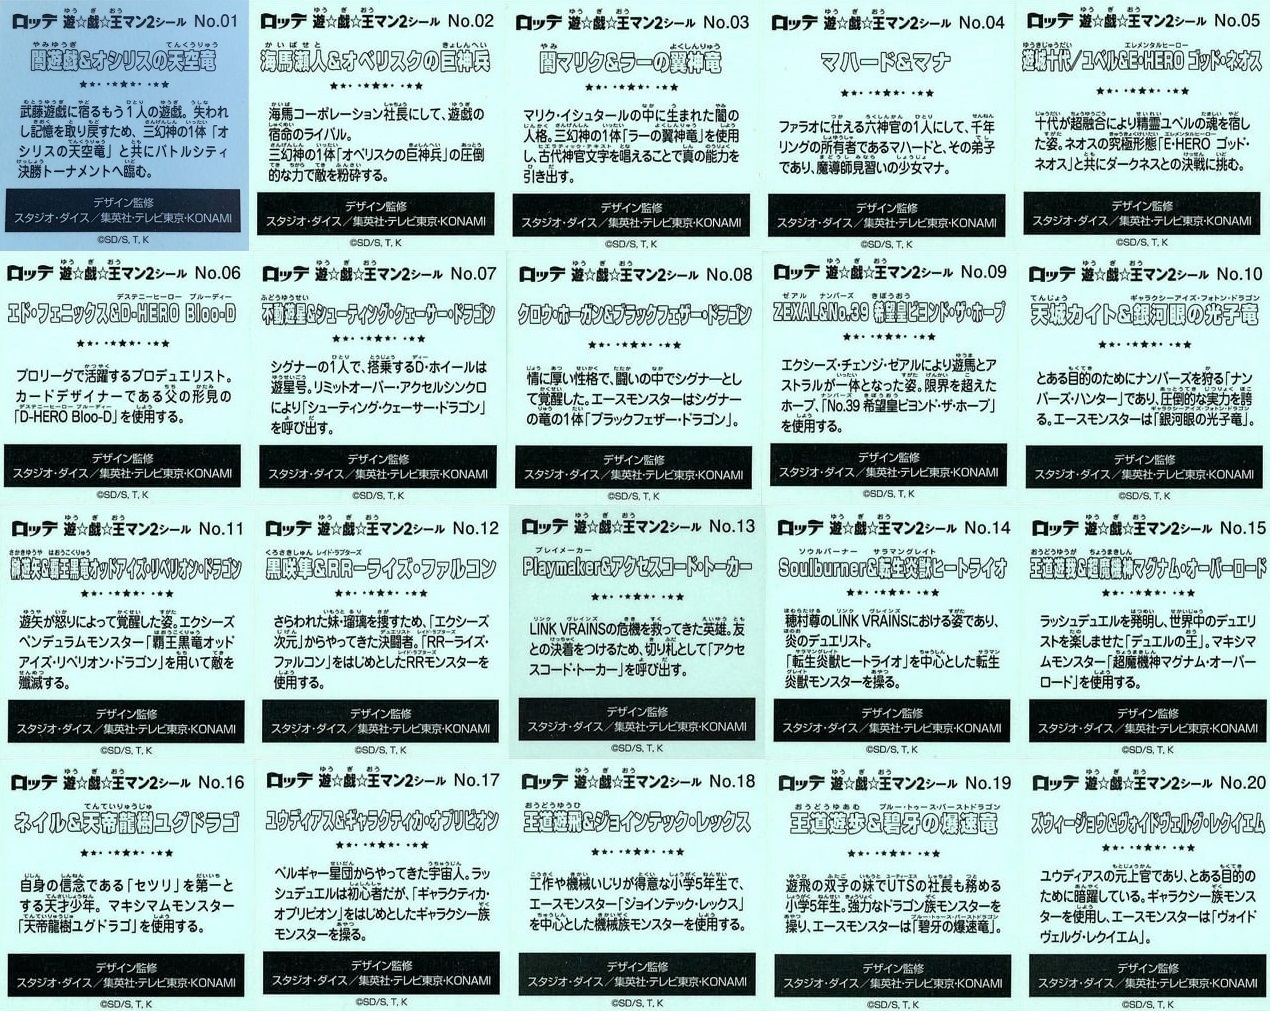 遊戯王マンチョコ2 全20種 シール画像(表面/裏面)【裏面の画像 再更新